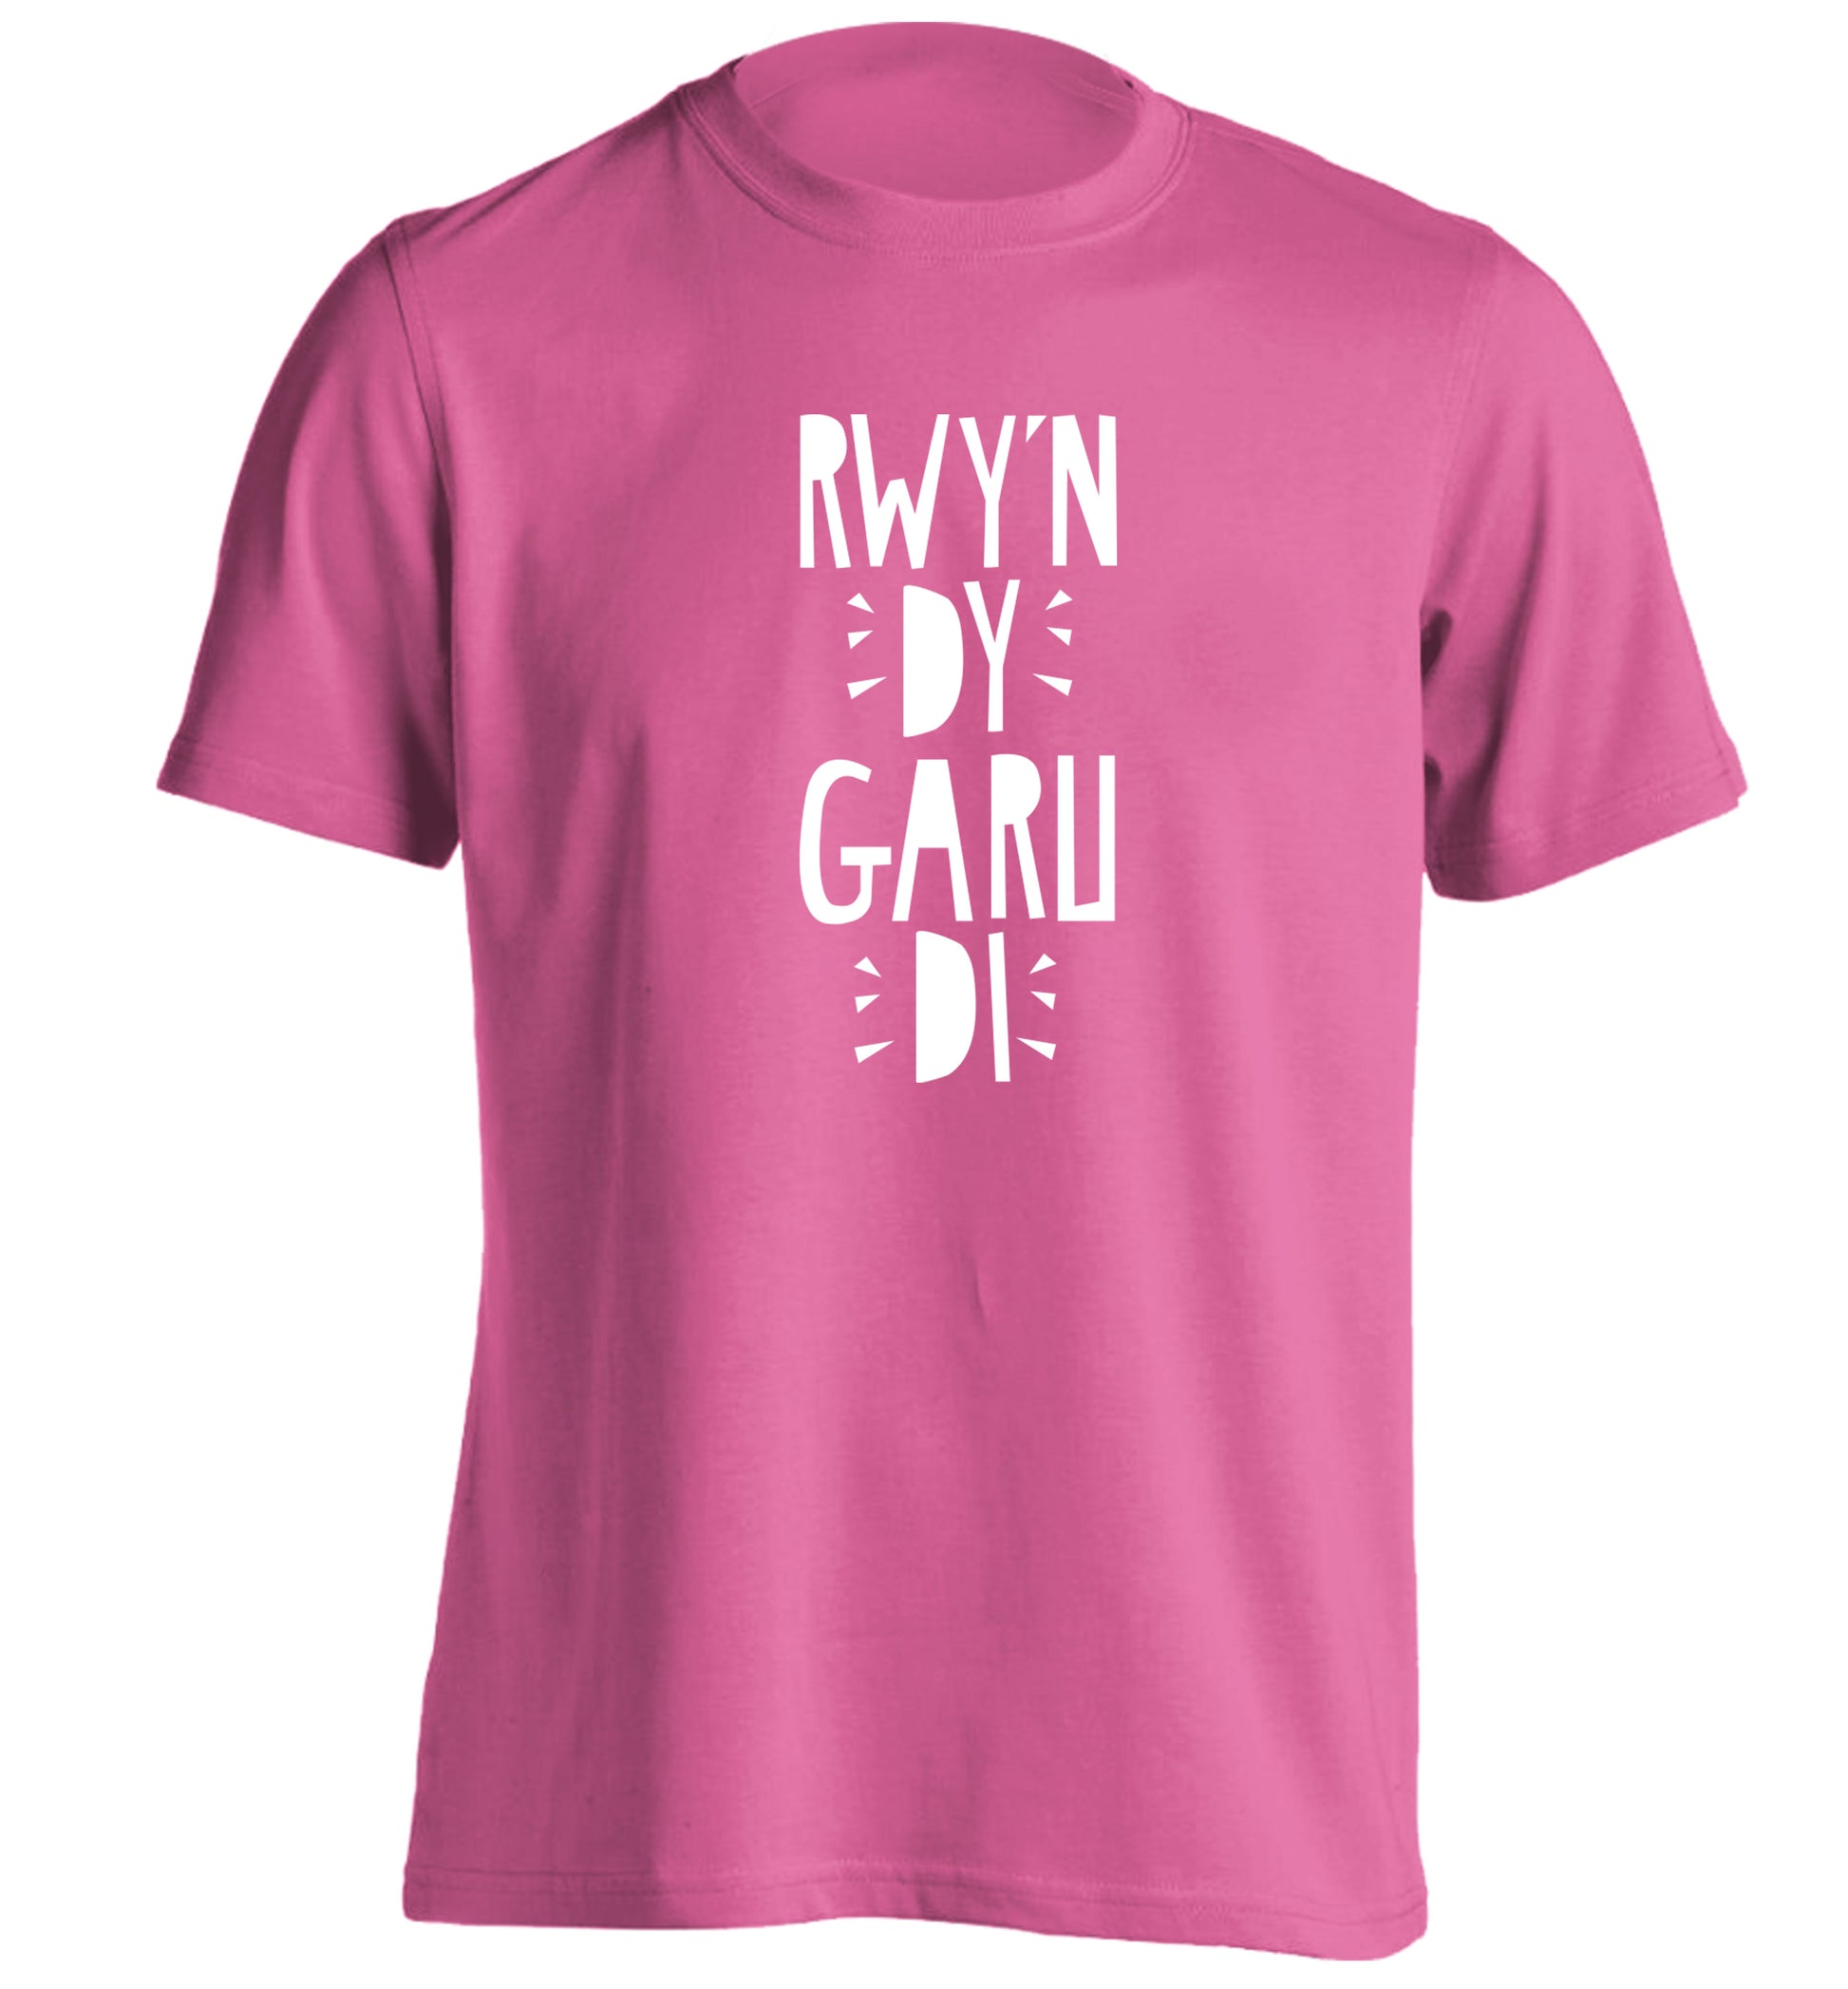 Rwy'n dy garu di - I love you adults unisex pink Tshirt 2XL